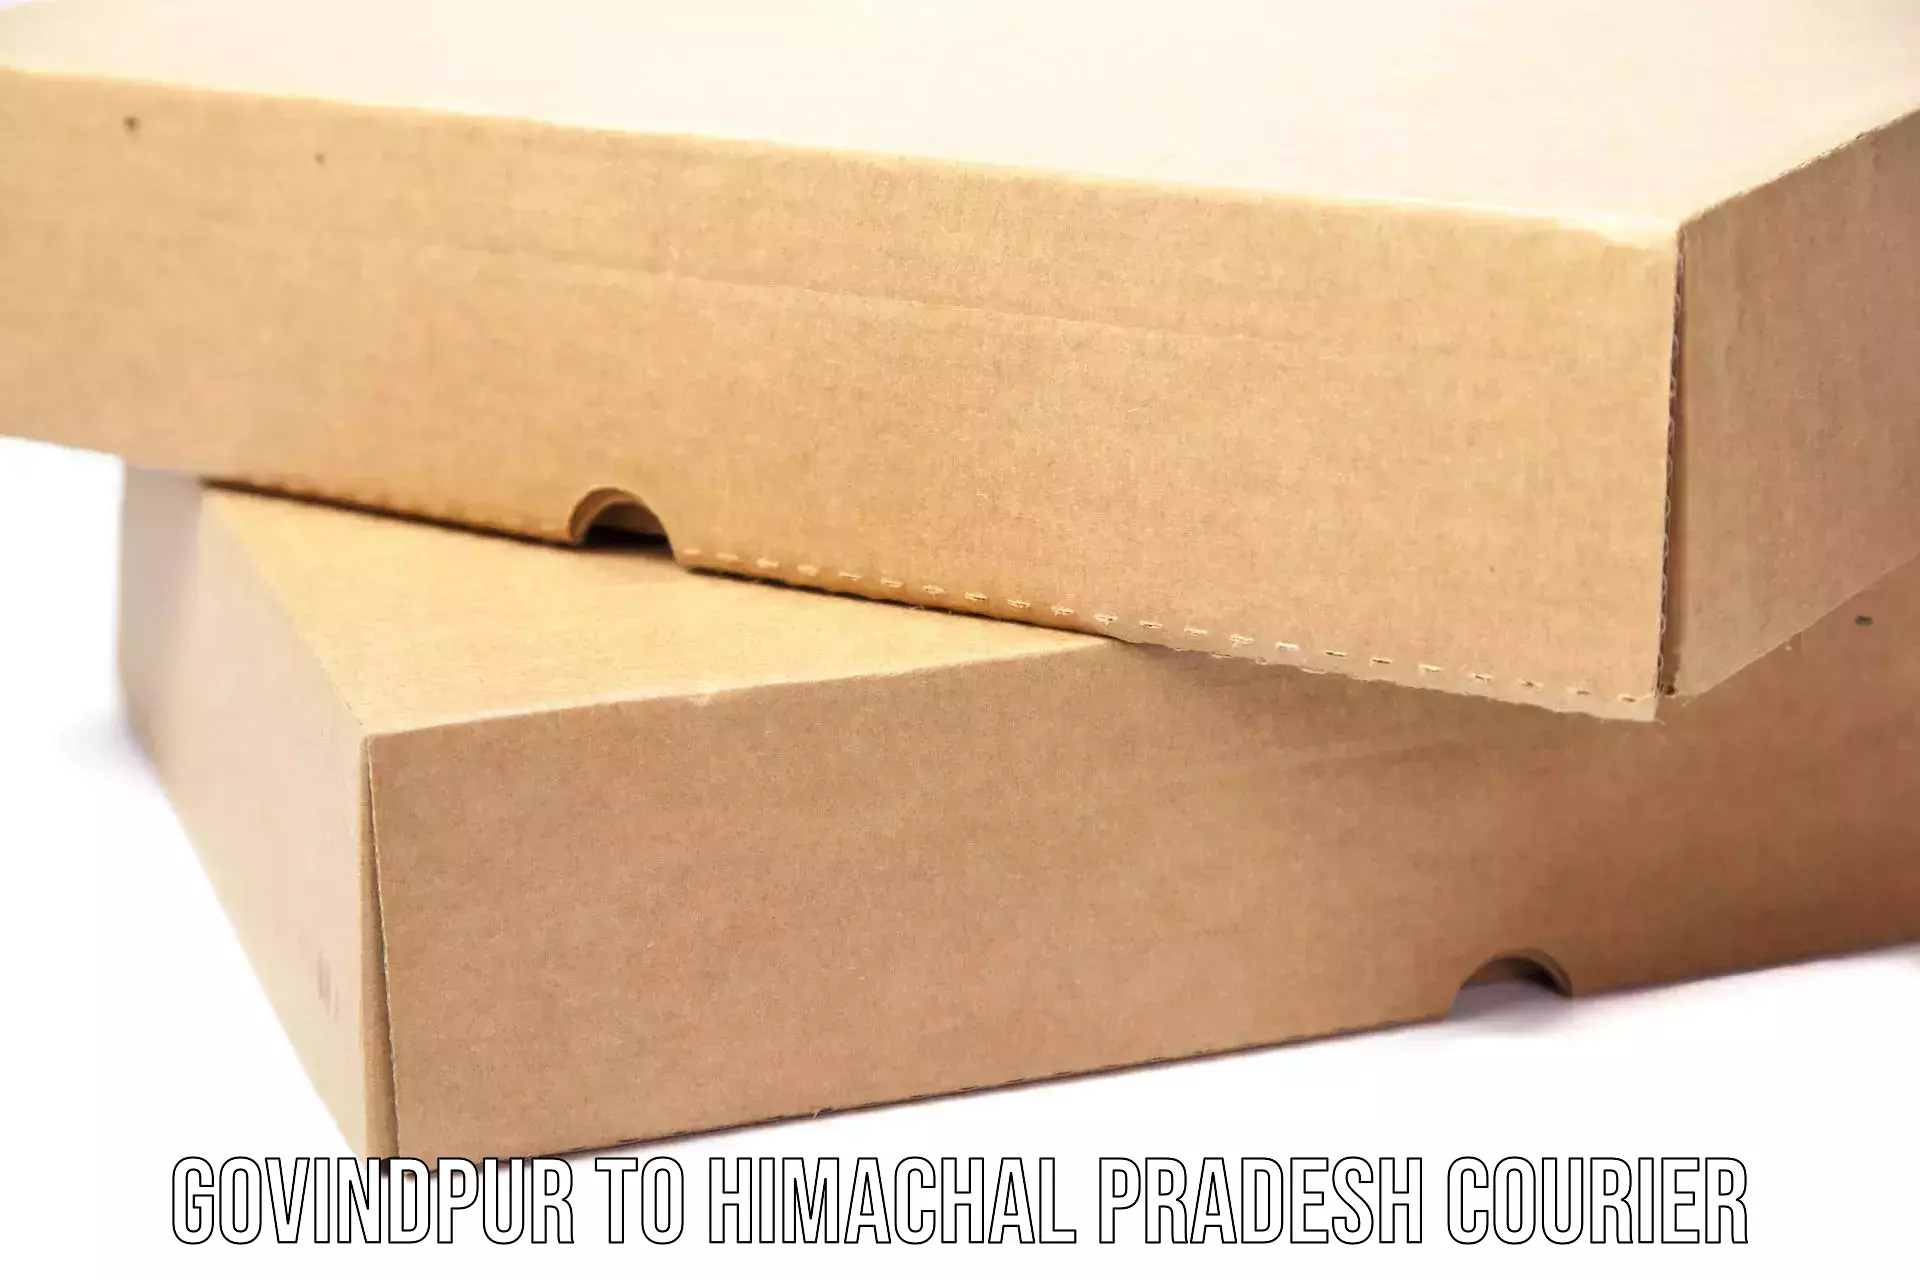 Smart parcel delivery Govindpur to IIT Mandi